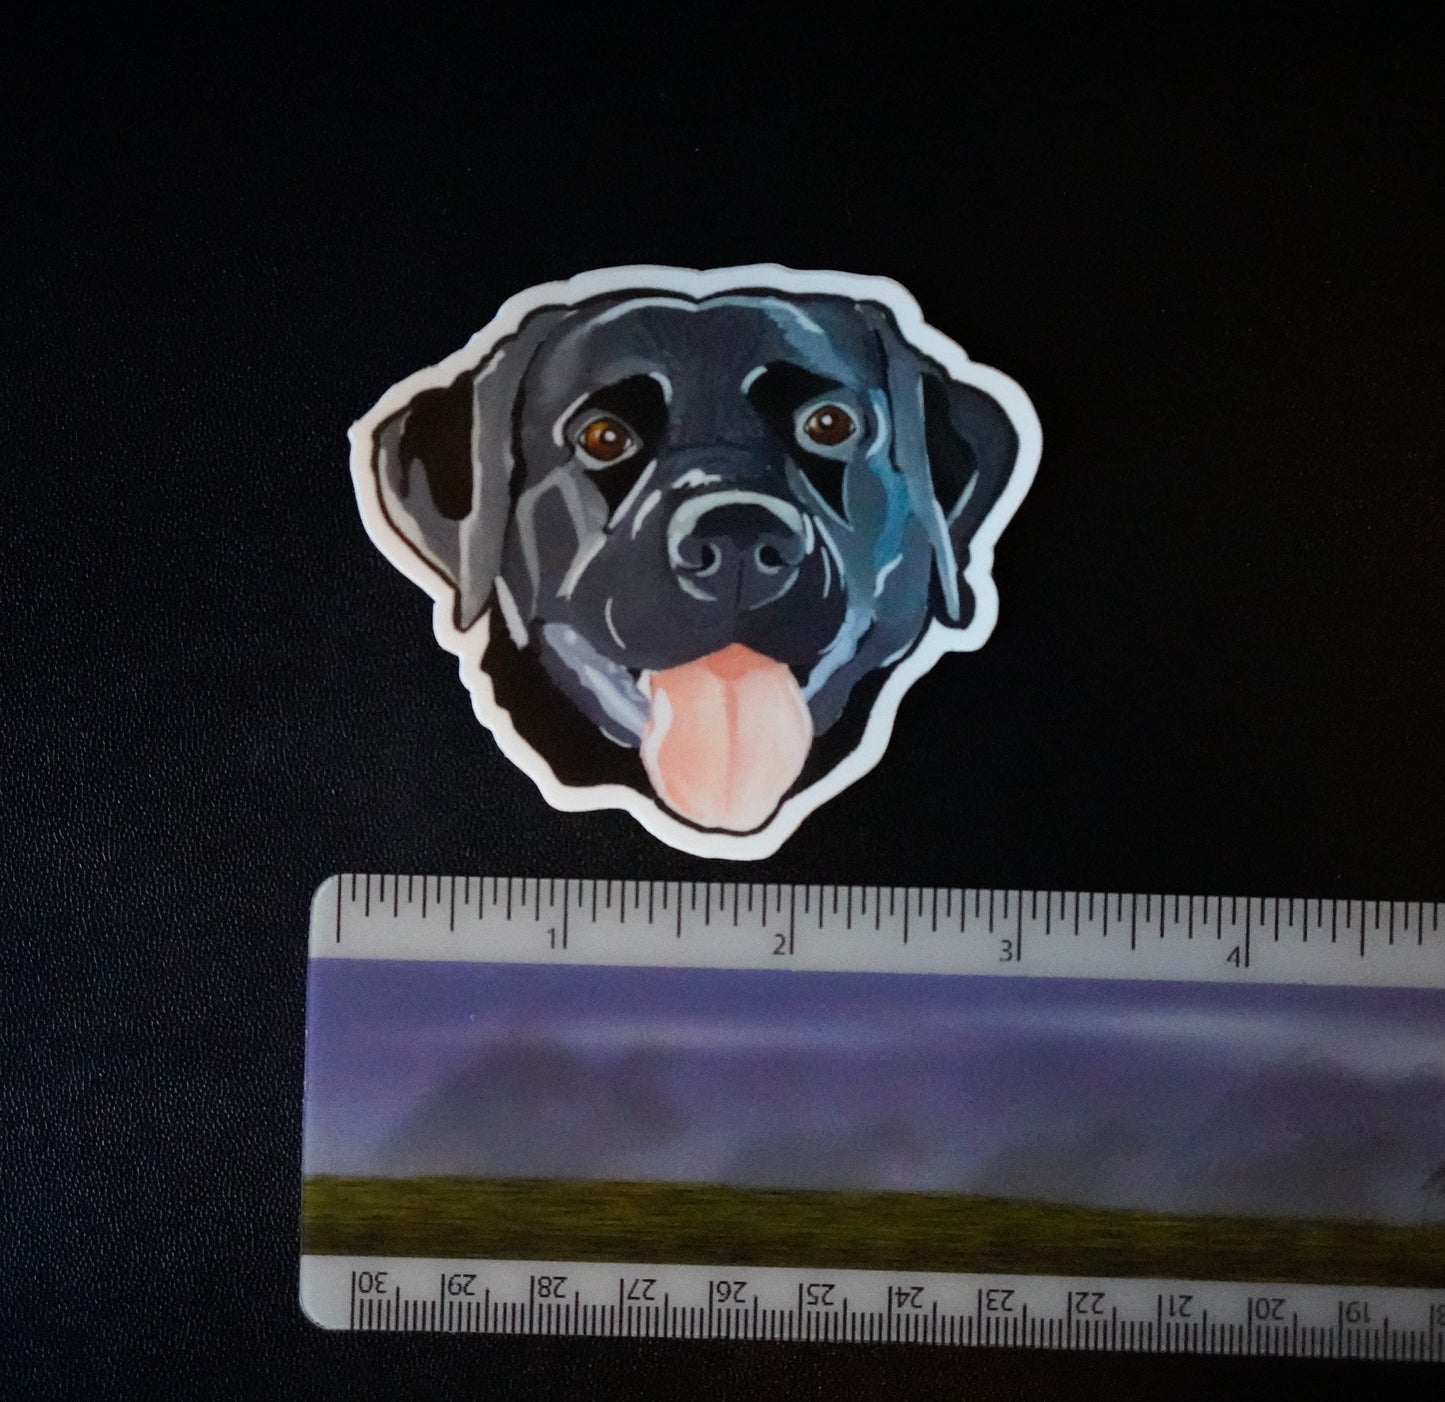 Labrador Dog 3” Die Cut Vinyl Sticker Decal: Durable Matte-Finish